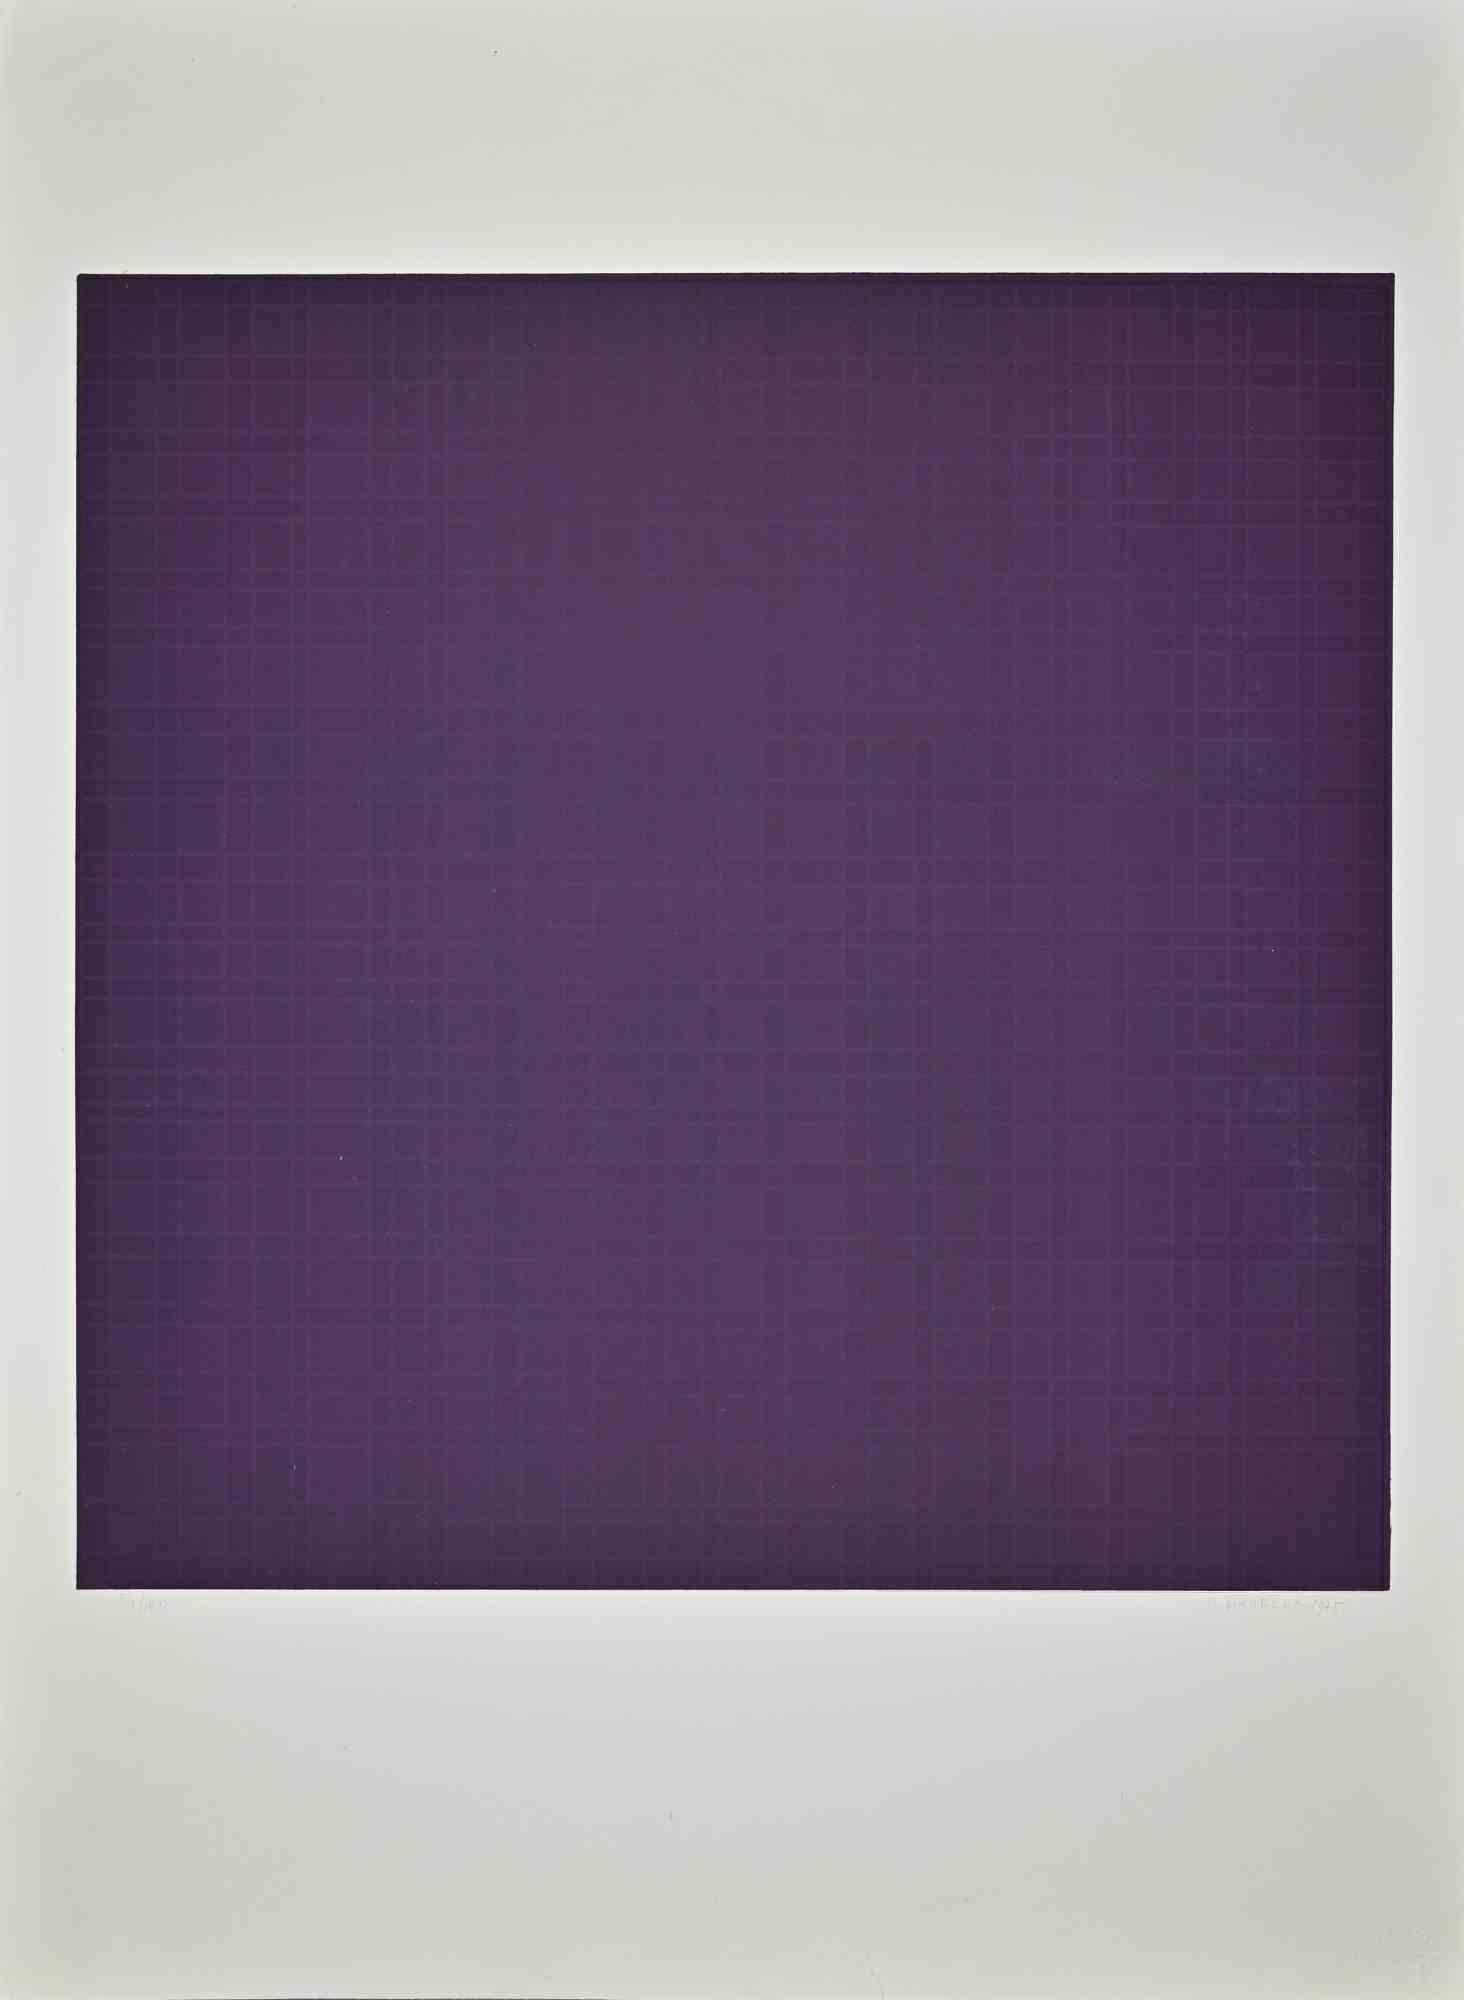 Die violette Komposition ist ein Originalkunstwerk von Oscar Piattella aus dem Jahr 1975.

Handsigniert, datiert am unteren rechten Rand.

Links unten nummeriert. Auflage: 54/100 Drucke.

Gedruckt von Stamperia Posterula.

Guter Zustand bis auf sehr